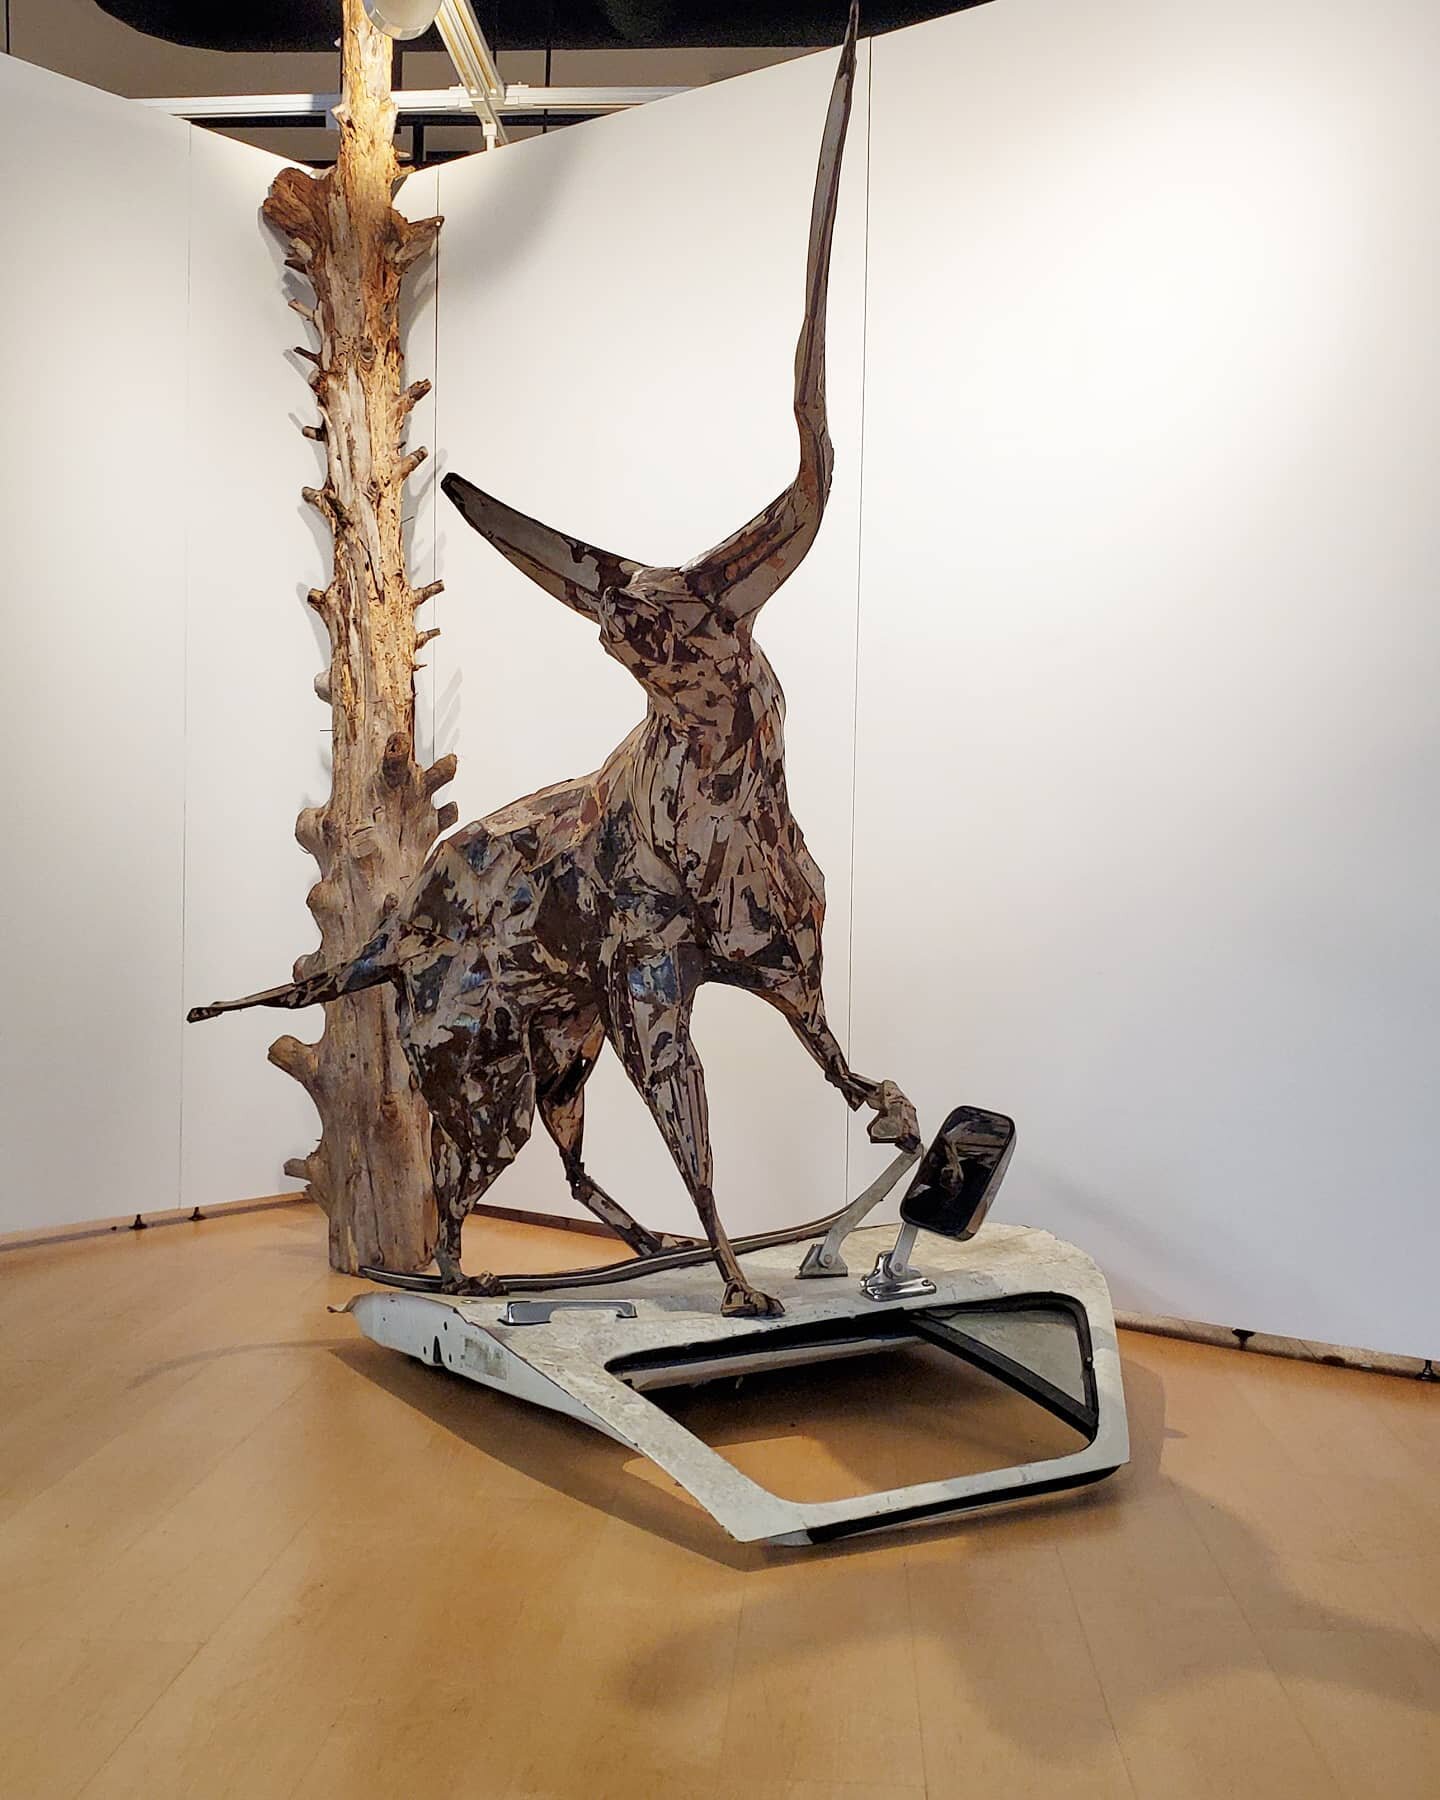 &quot;Beast Of Burden&quot;
steel, foam, bondo, cedar tree, truck door.
.
.
.
#sculpture #art #contemporaryart #steel #metal #beast #chimera